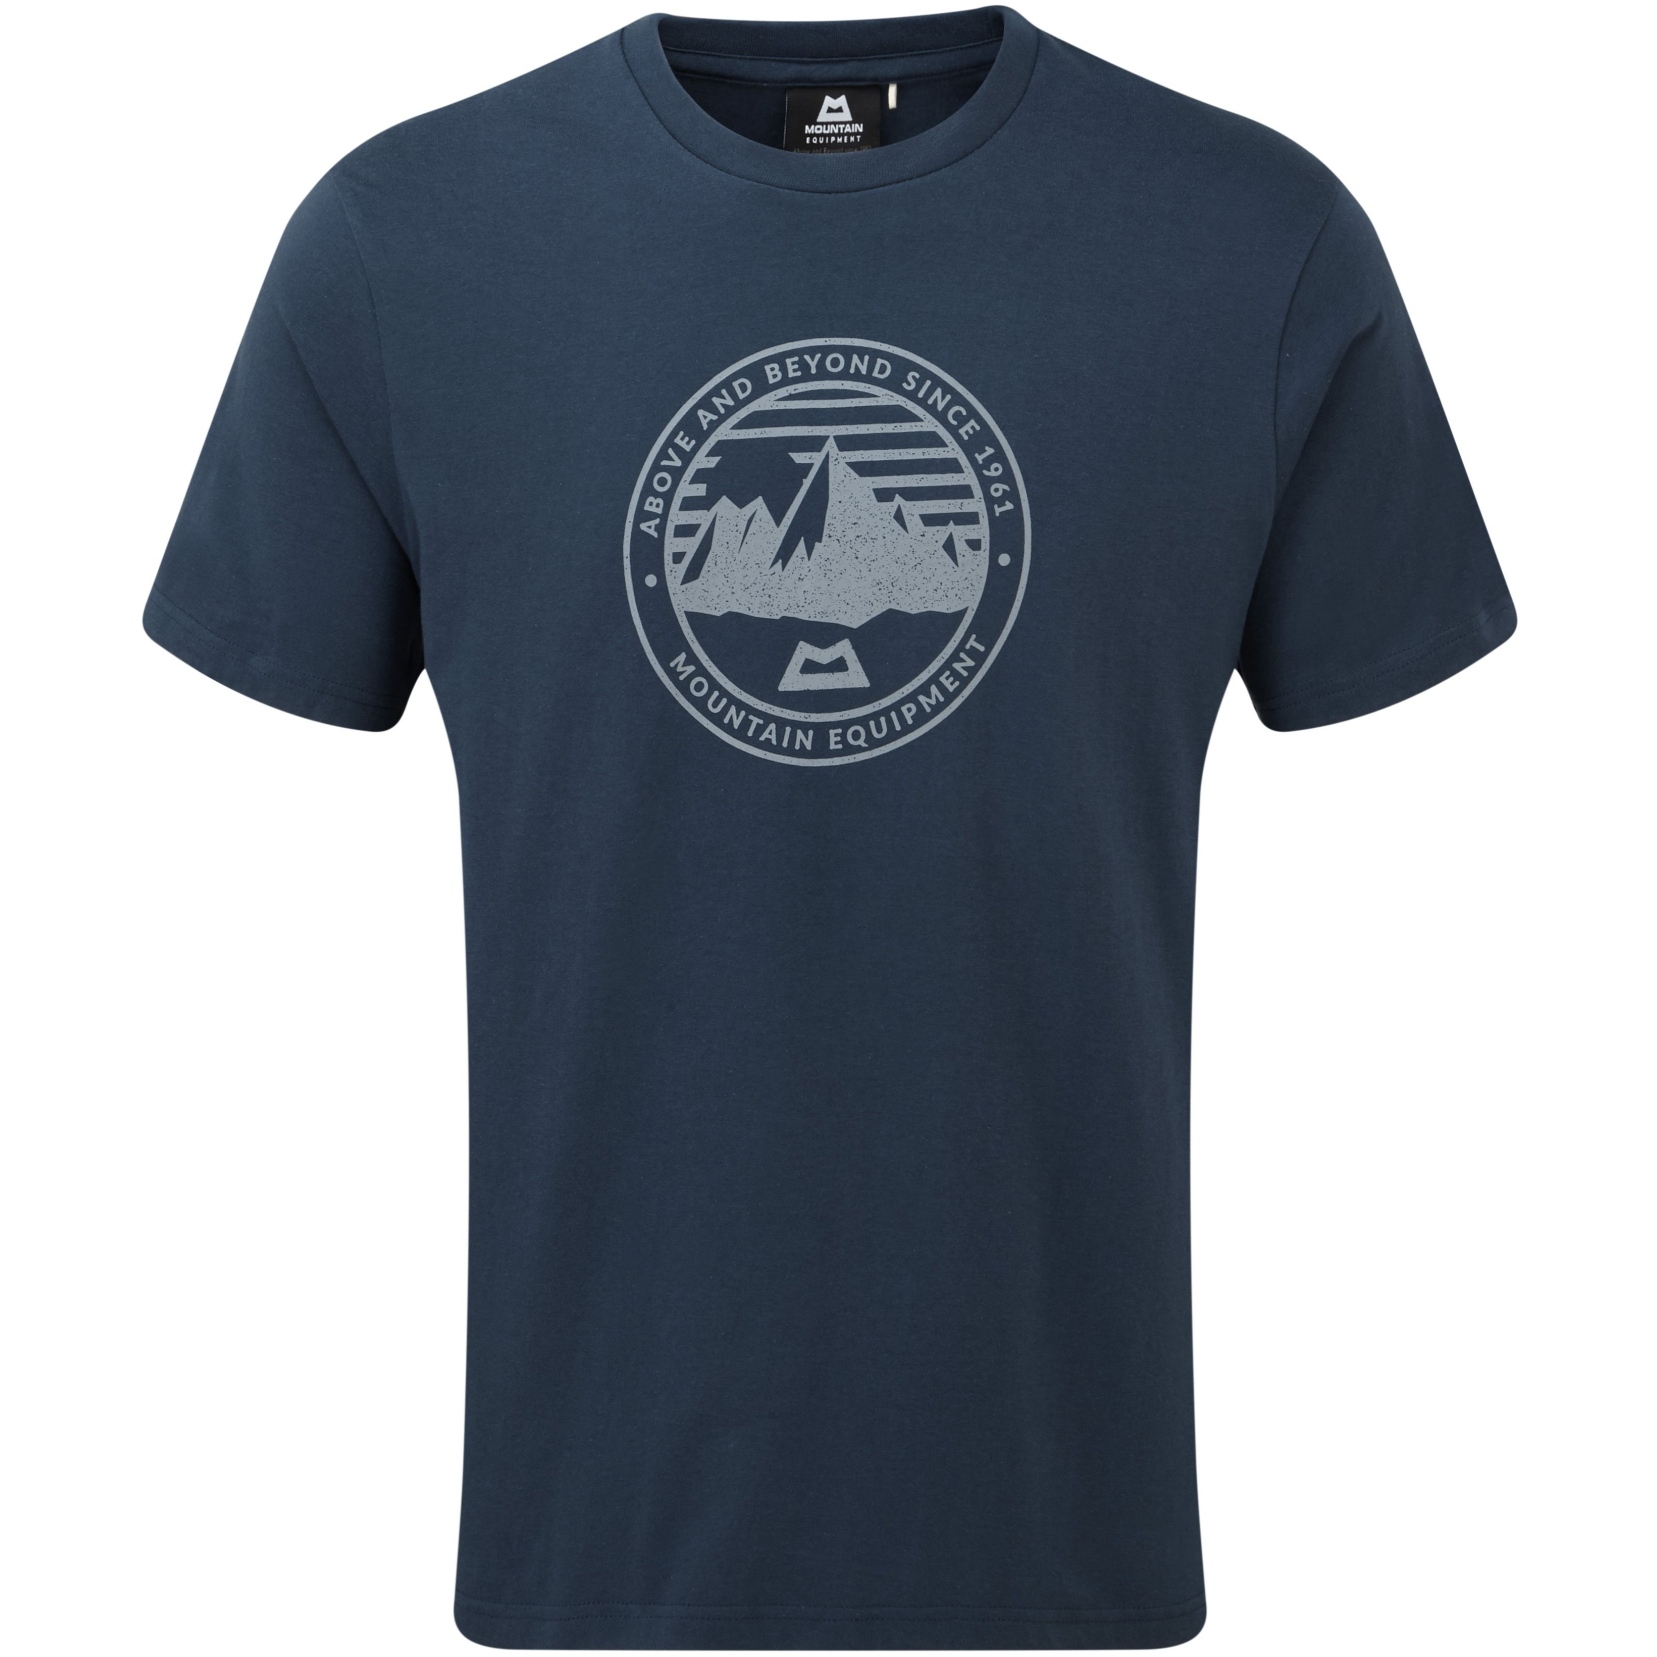 Produktbild von Mountain Equipment Roundel T-Shirt ME-004770 - denim blue